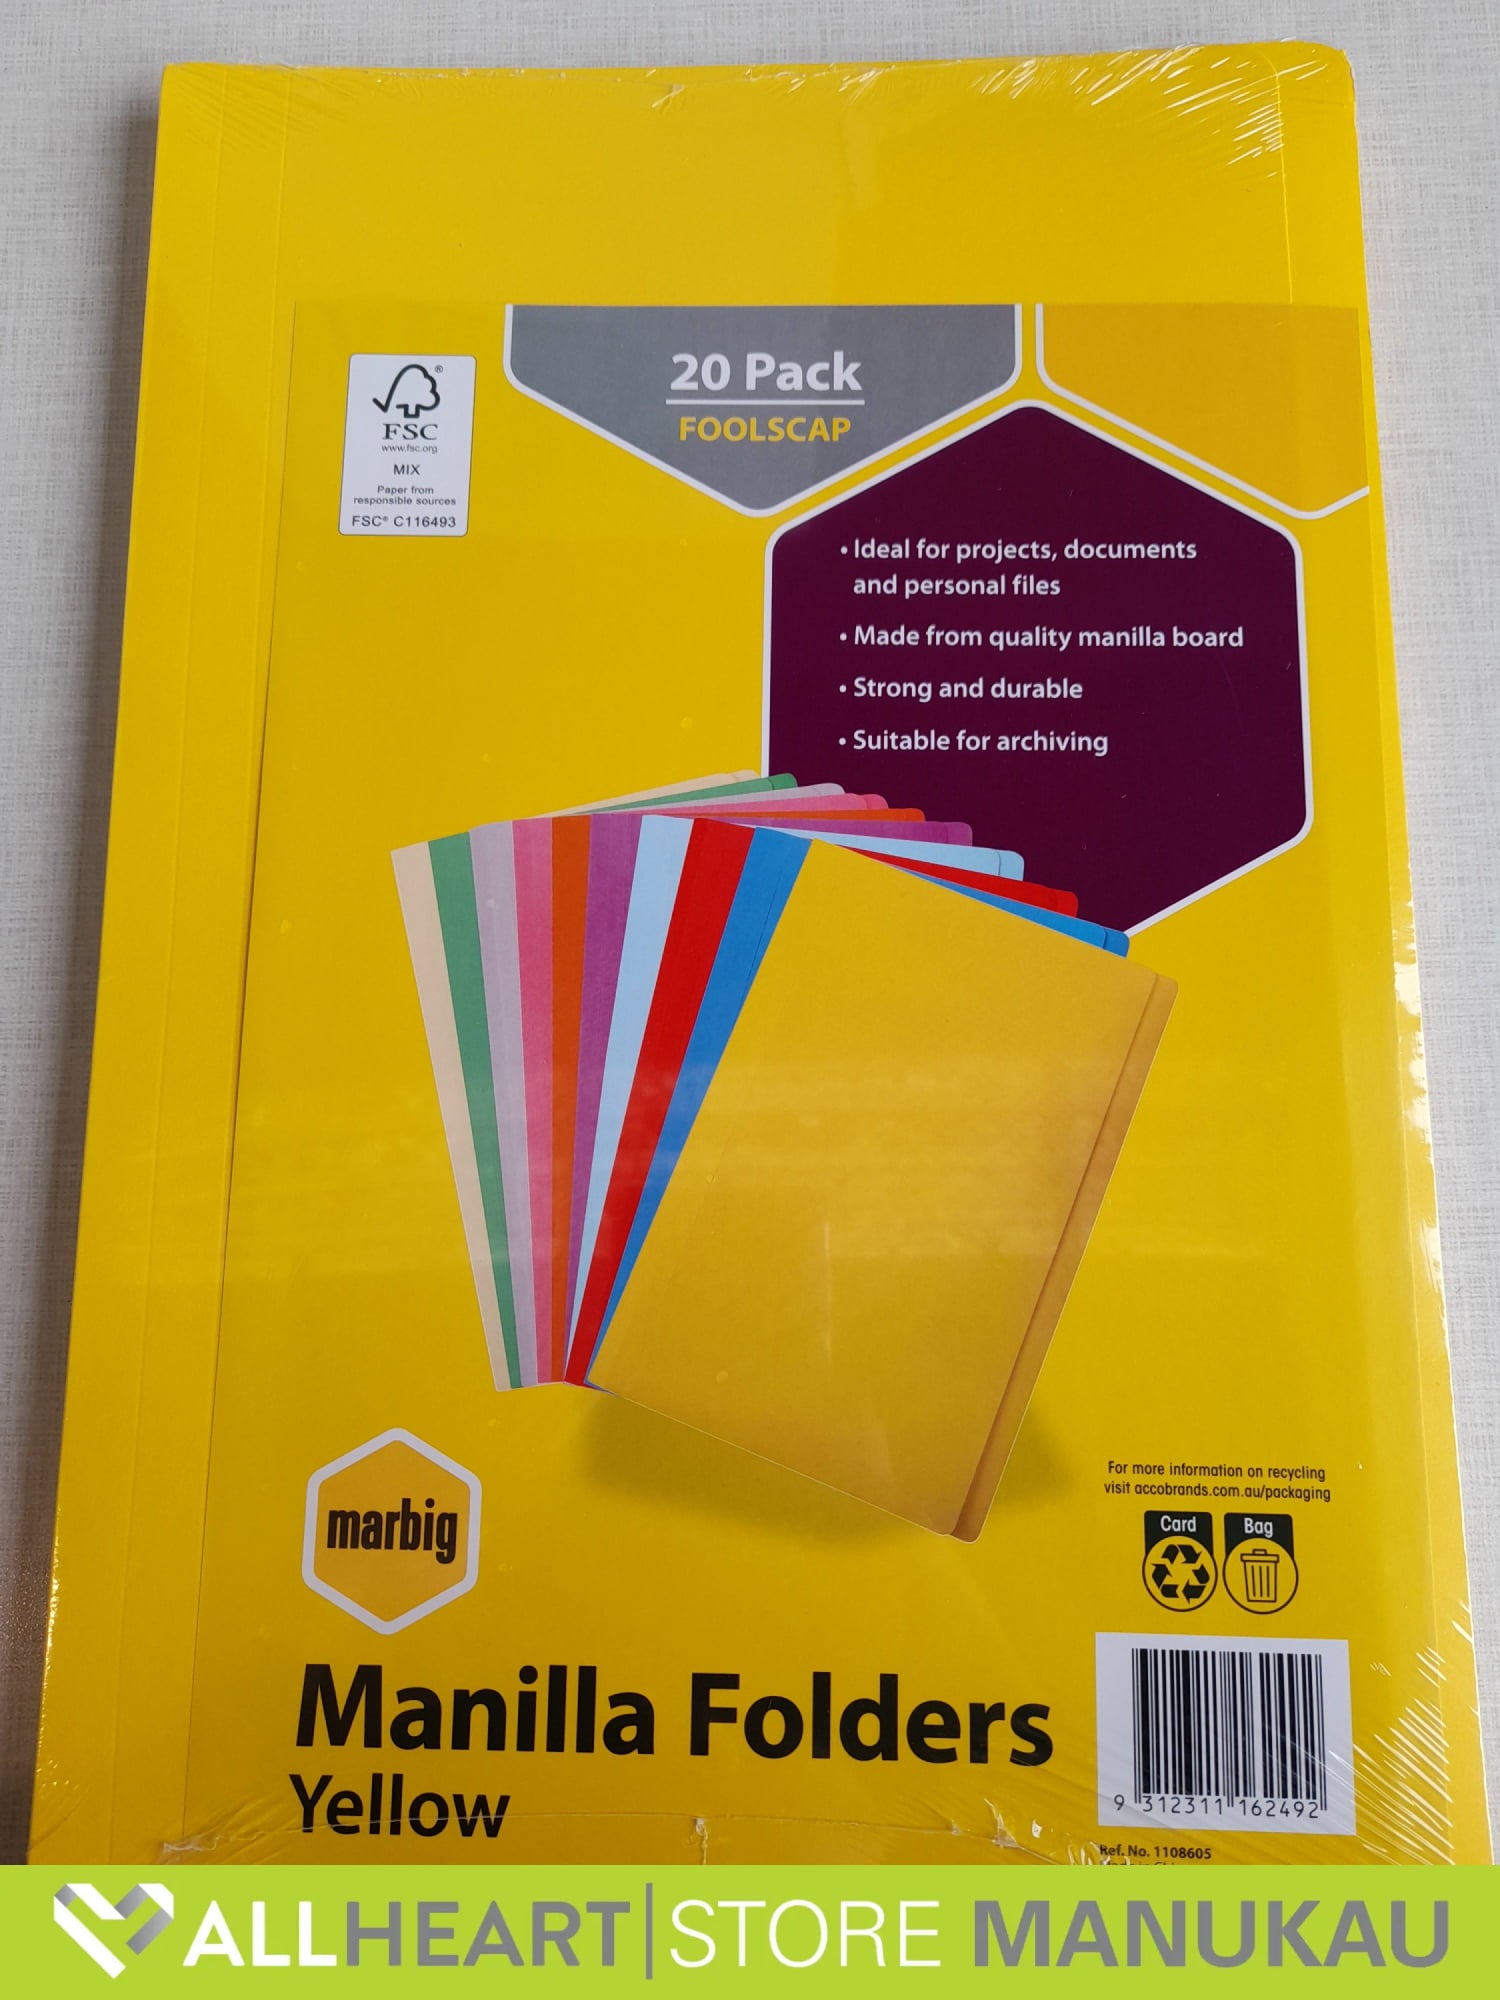 Manilla Folders - Yellow - 20 Pack